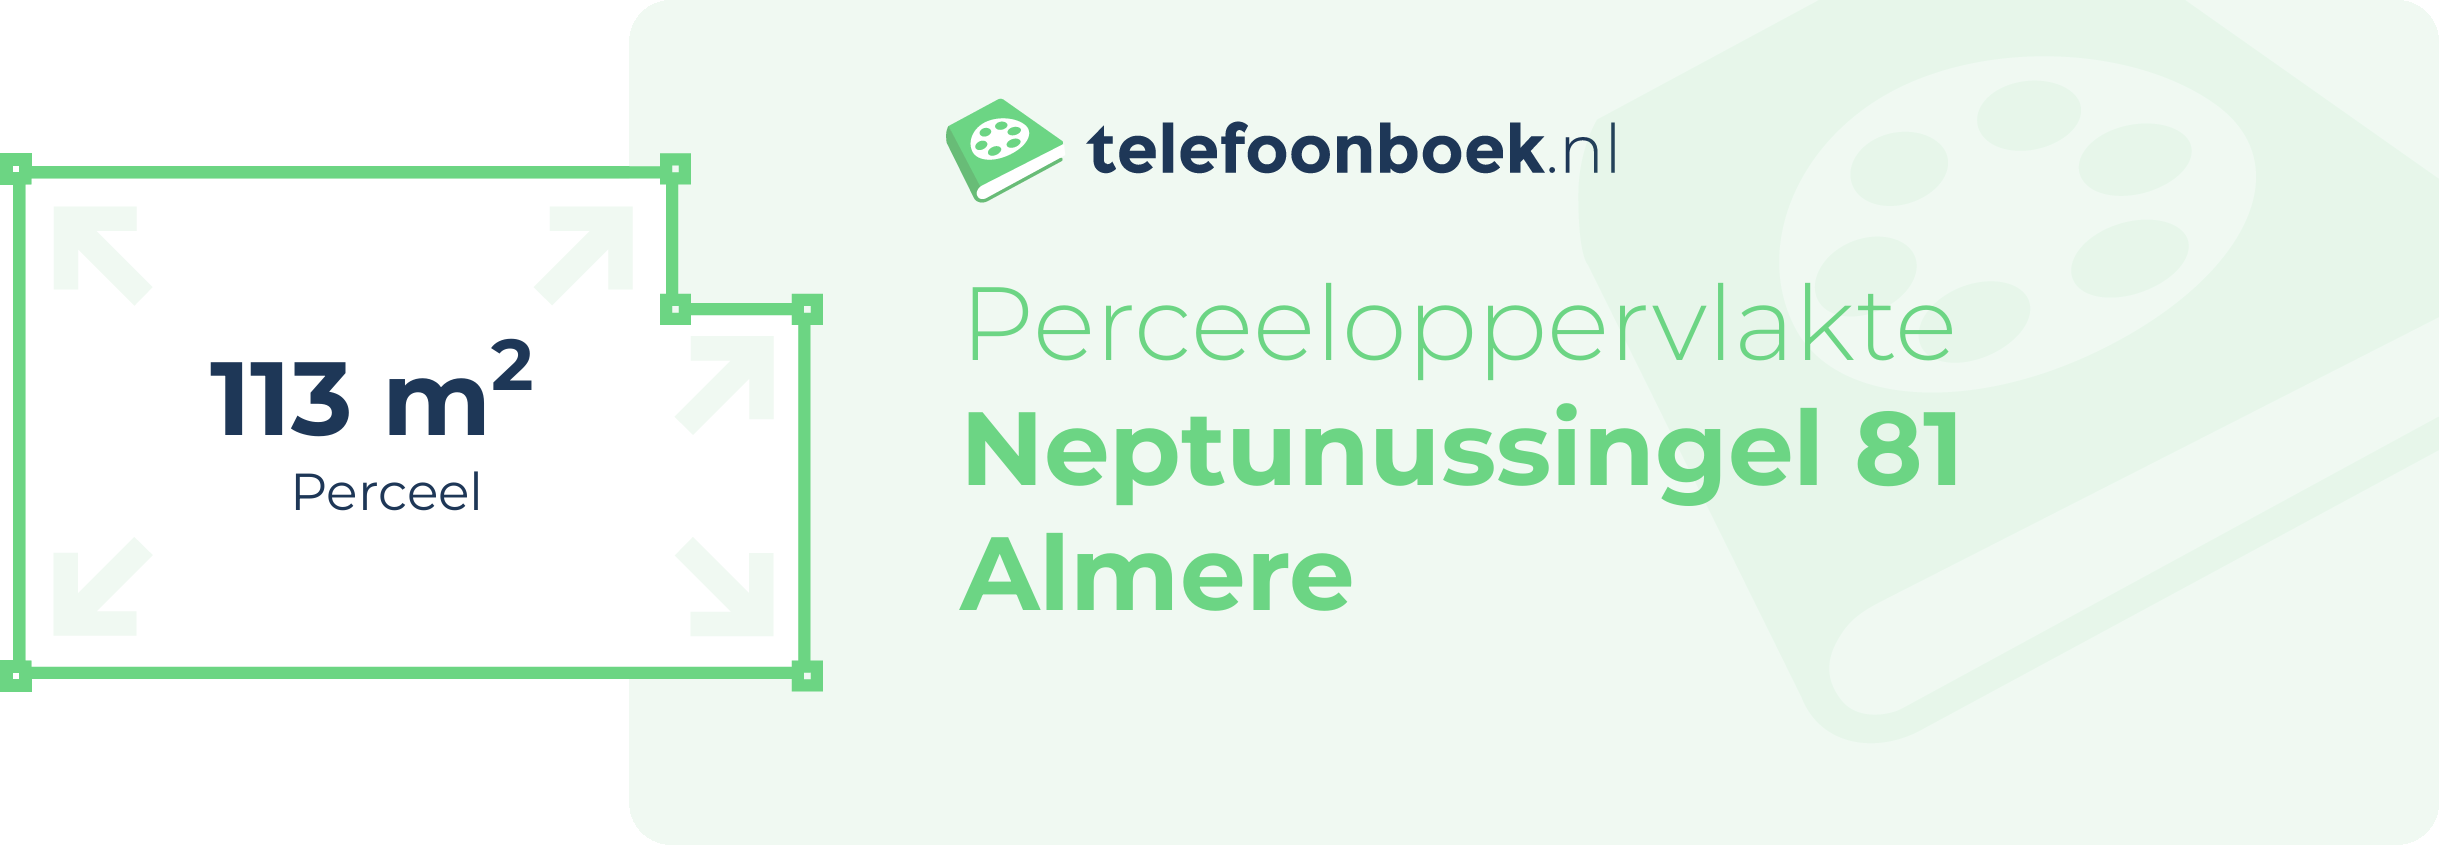 Perceeloppervlakte Neptunussingel 81 Almere